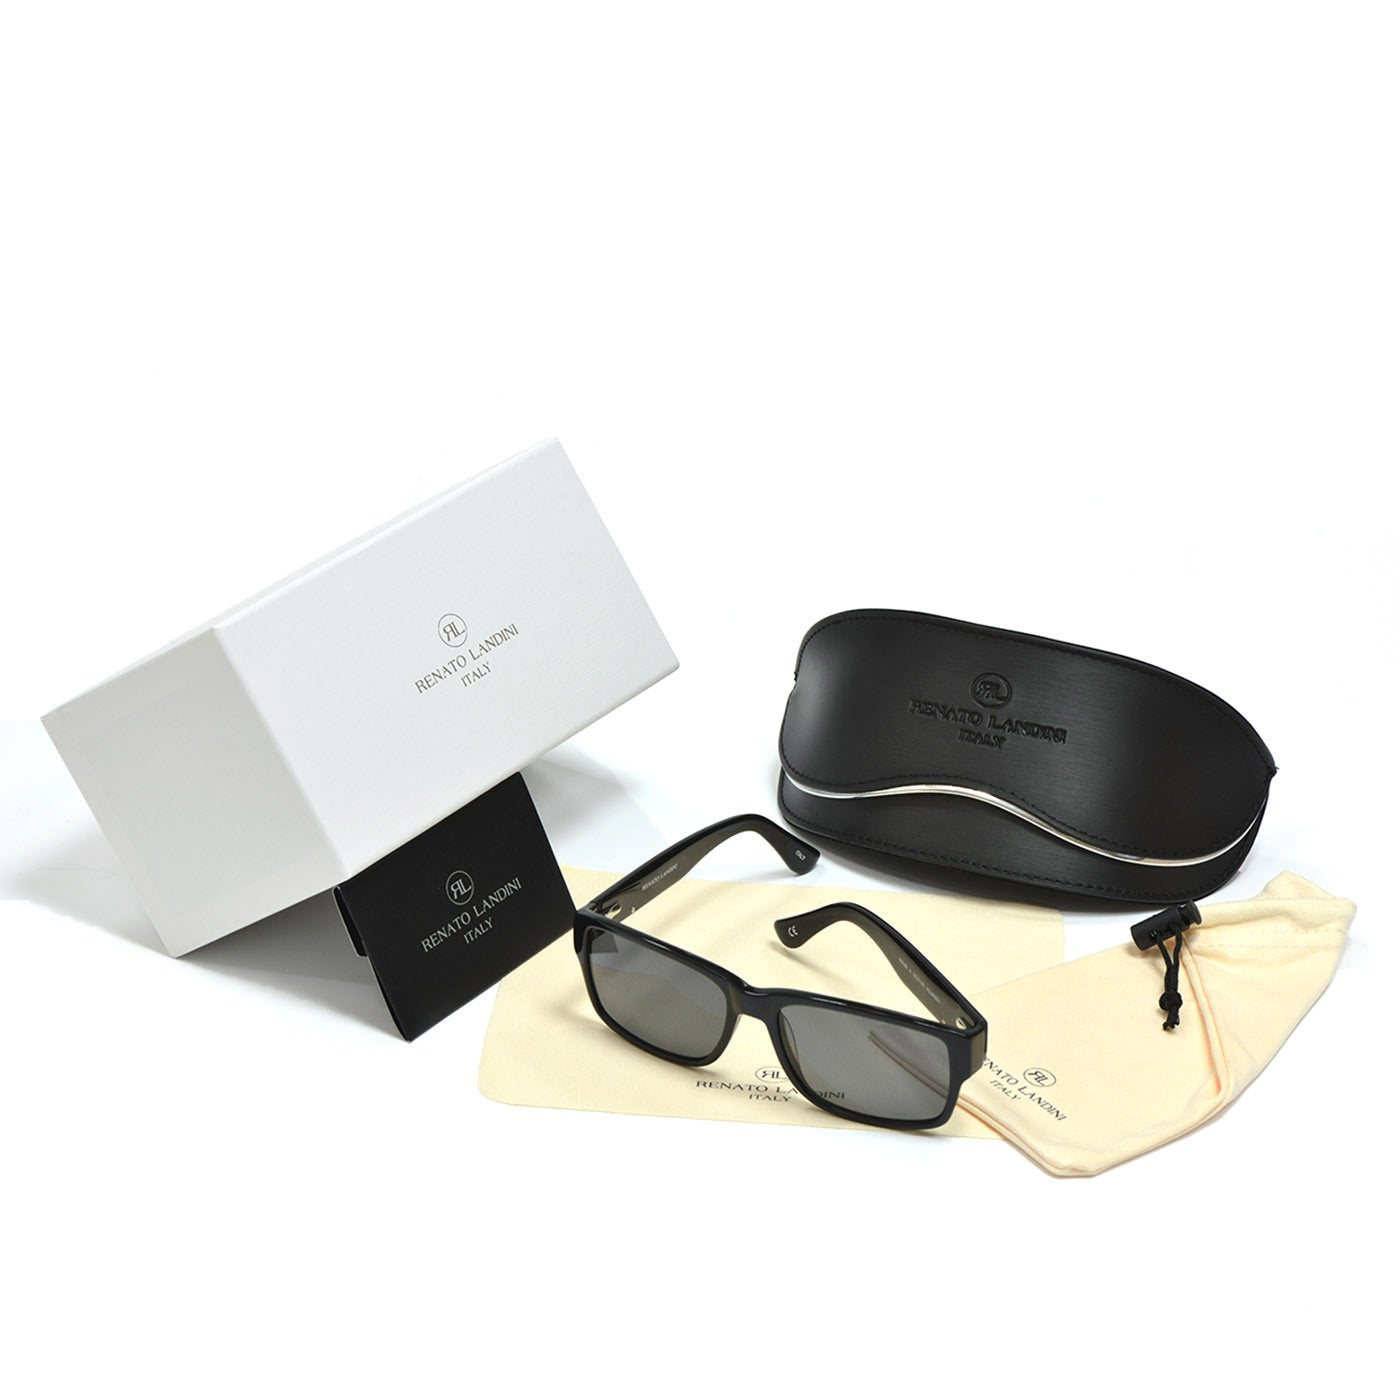 RENATO LANDINI Men's Sunglasses Black/ Ultra Vision